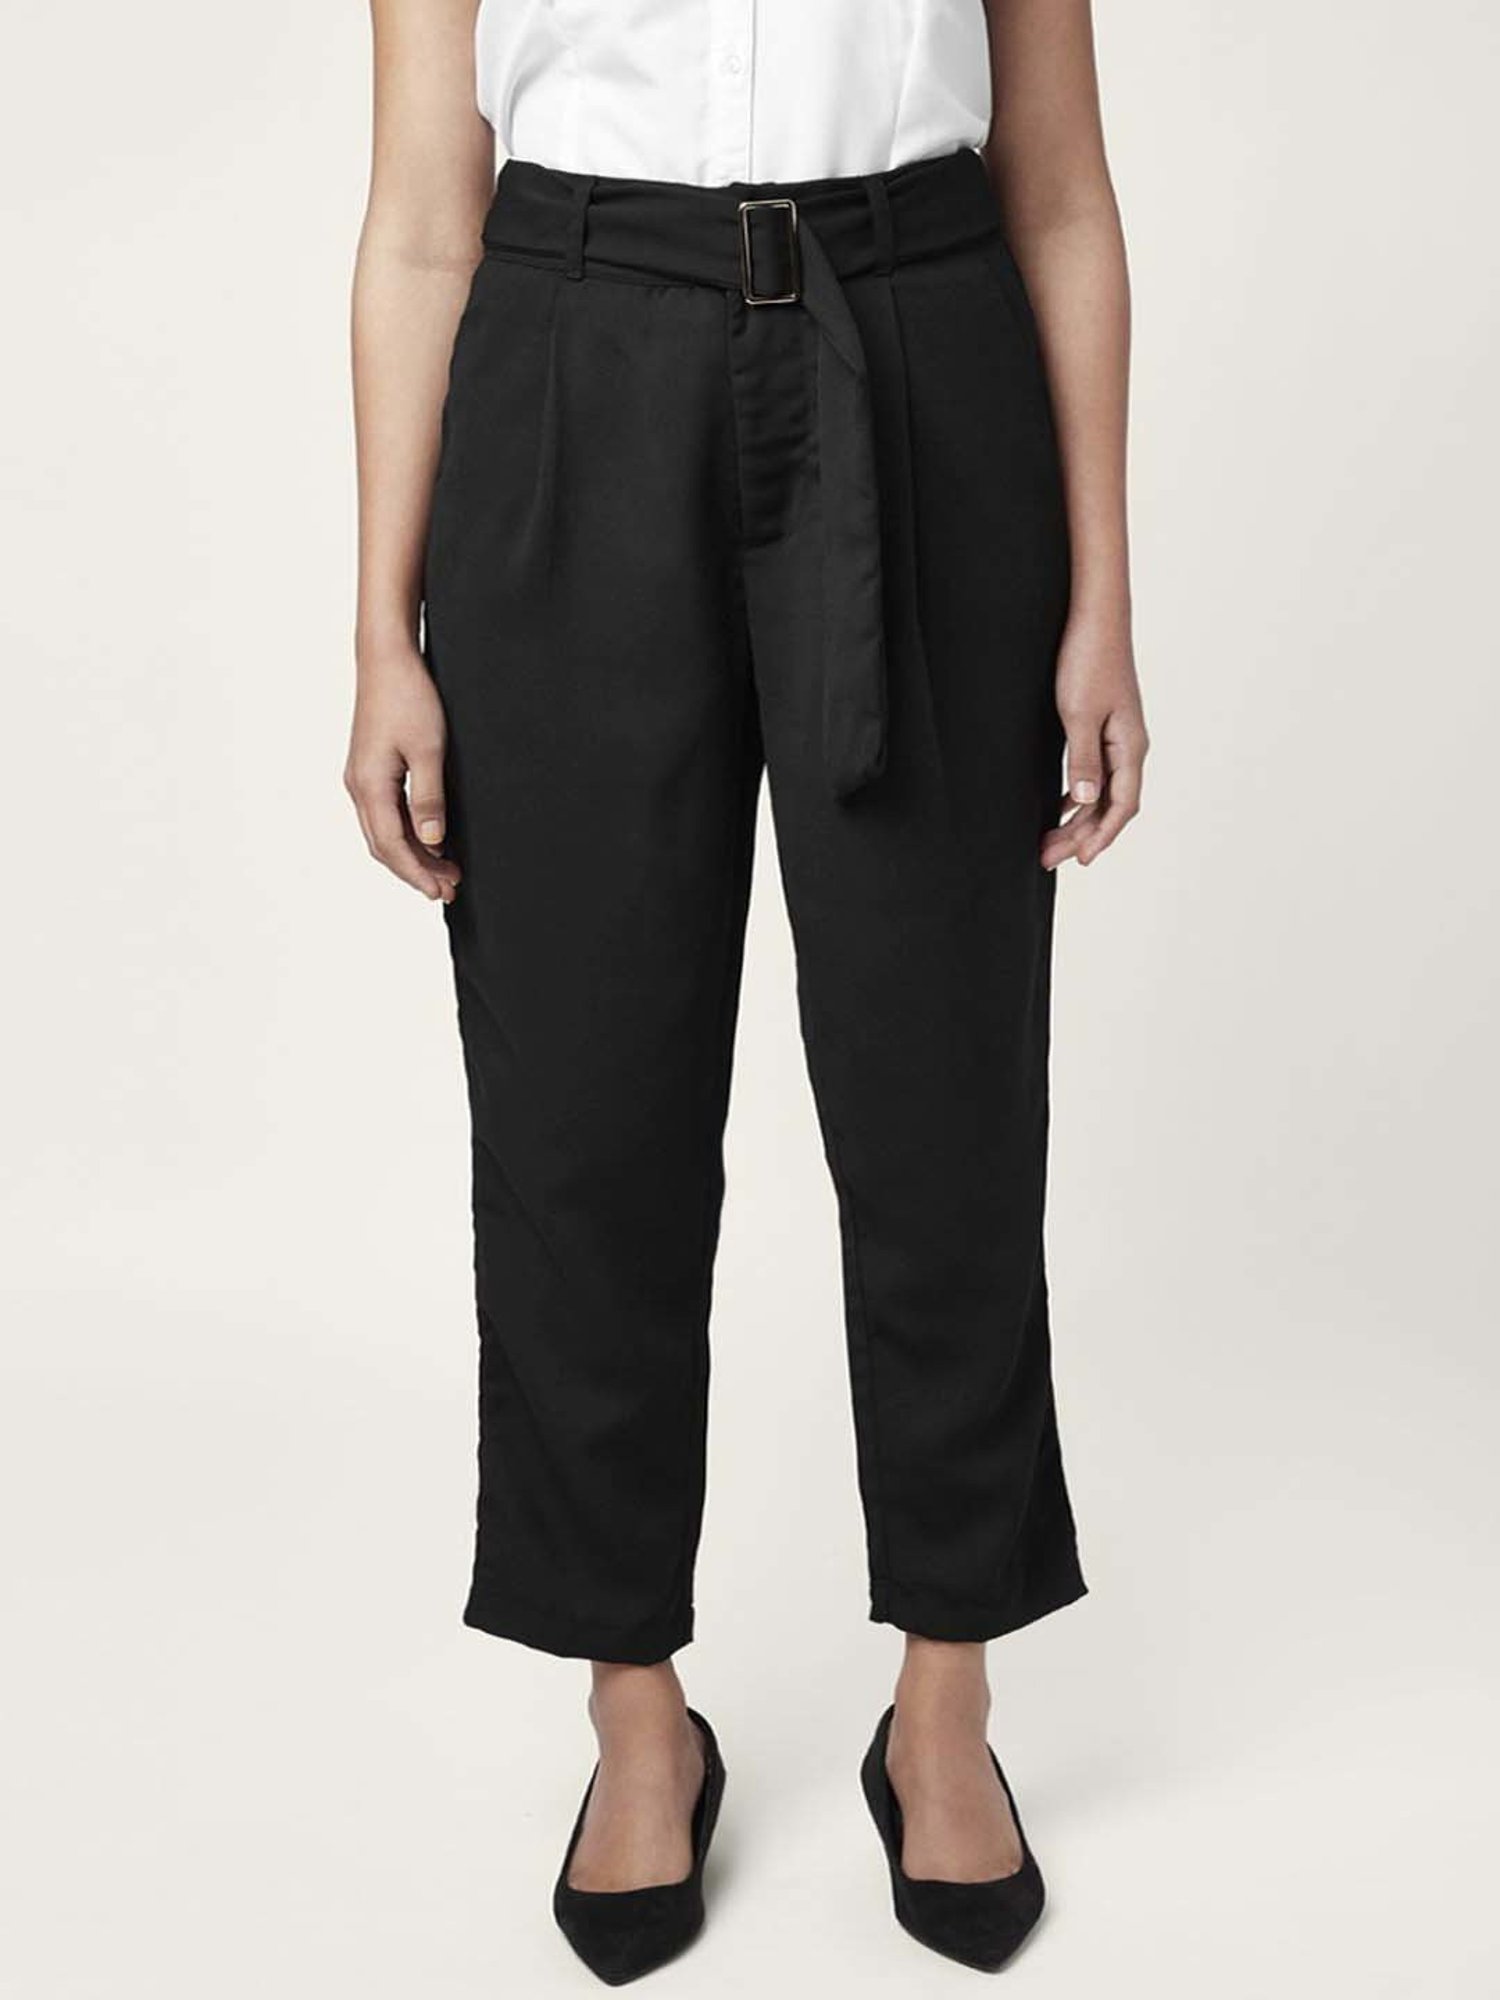 Buy Black Trousers  Pants for Women by Encrustd Online  Ajiocom